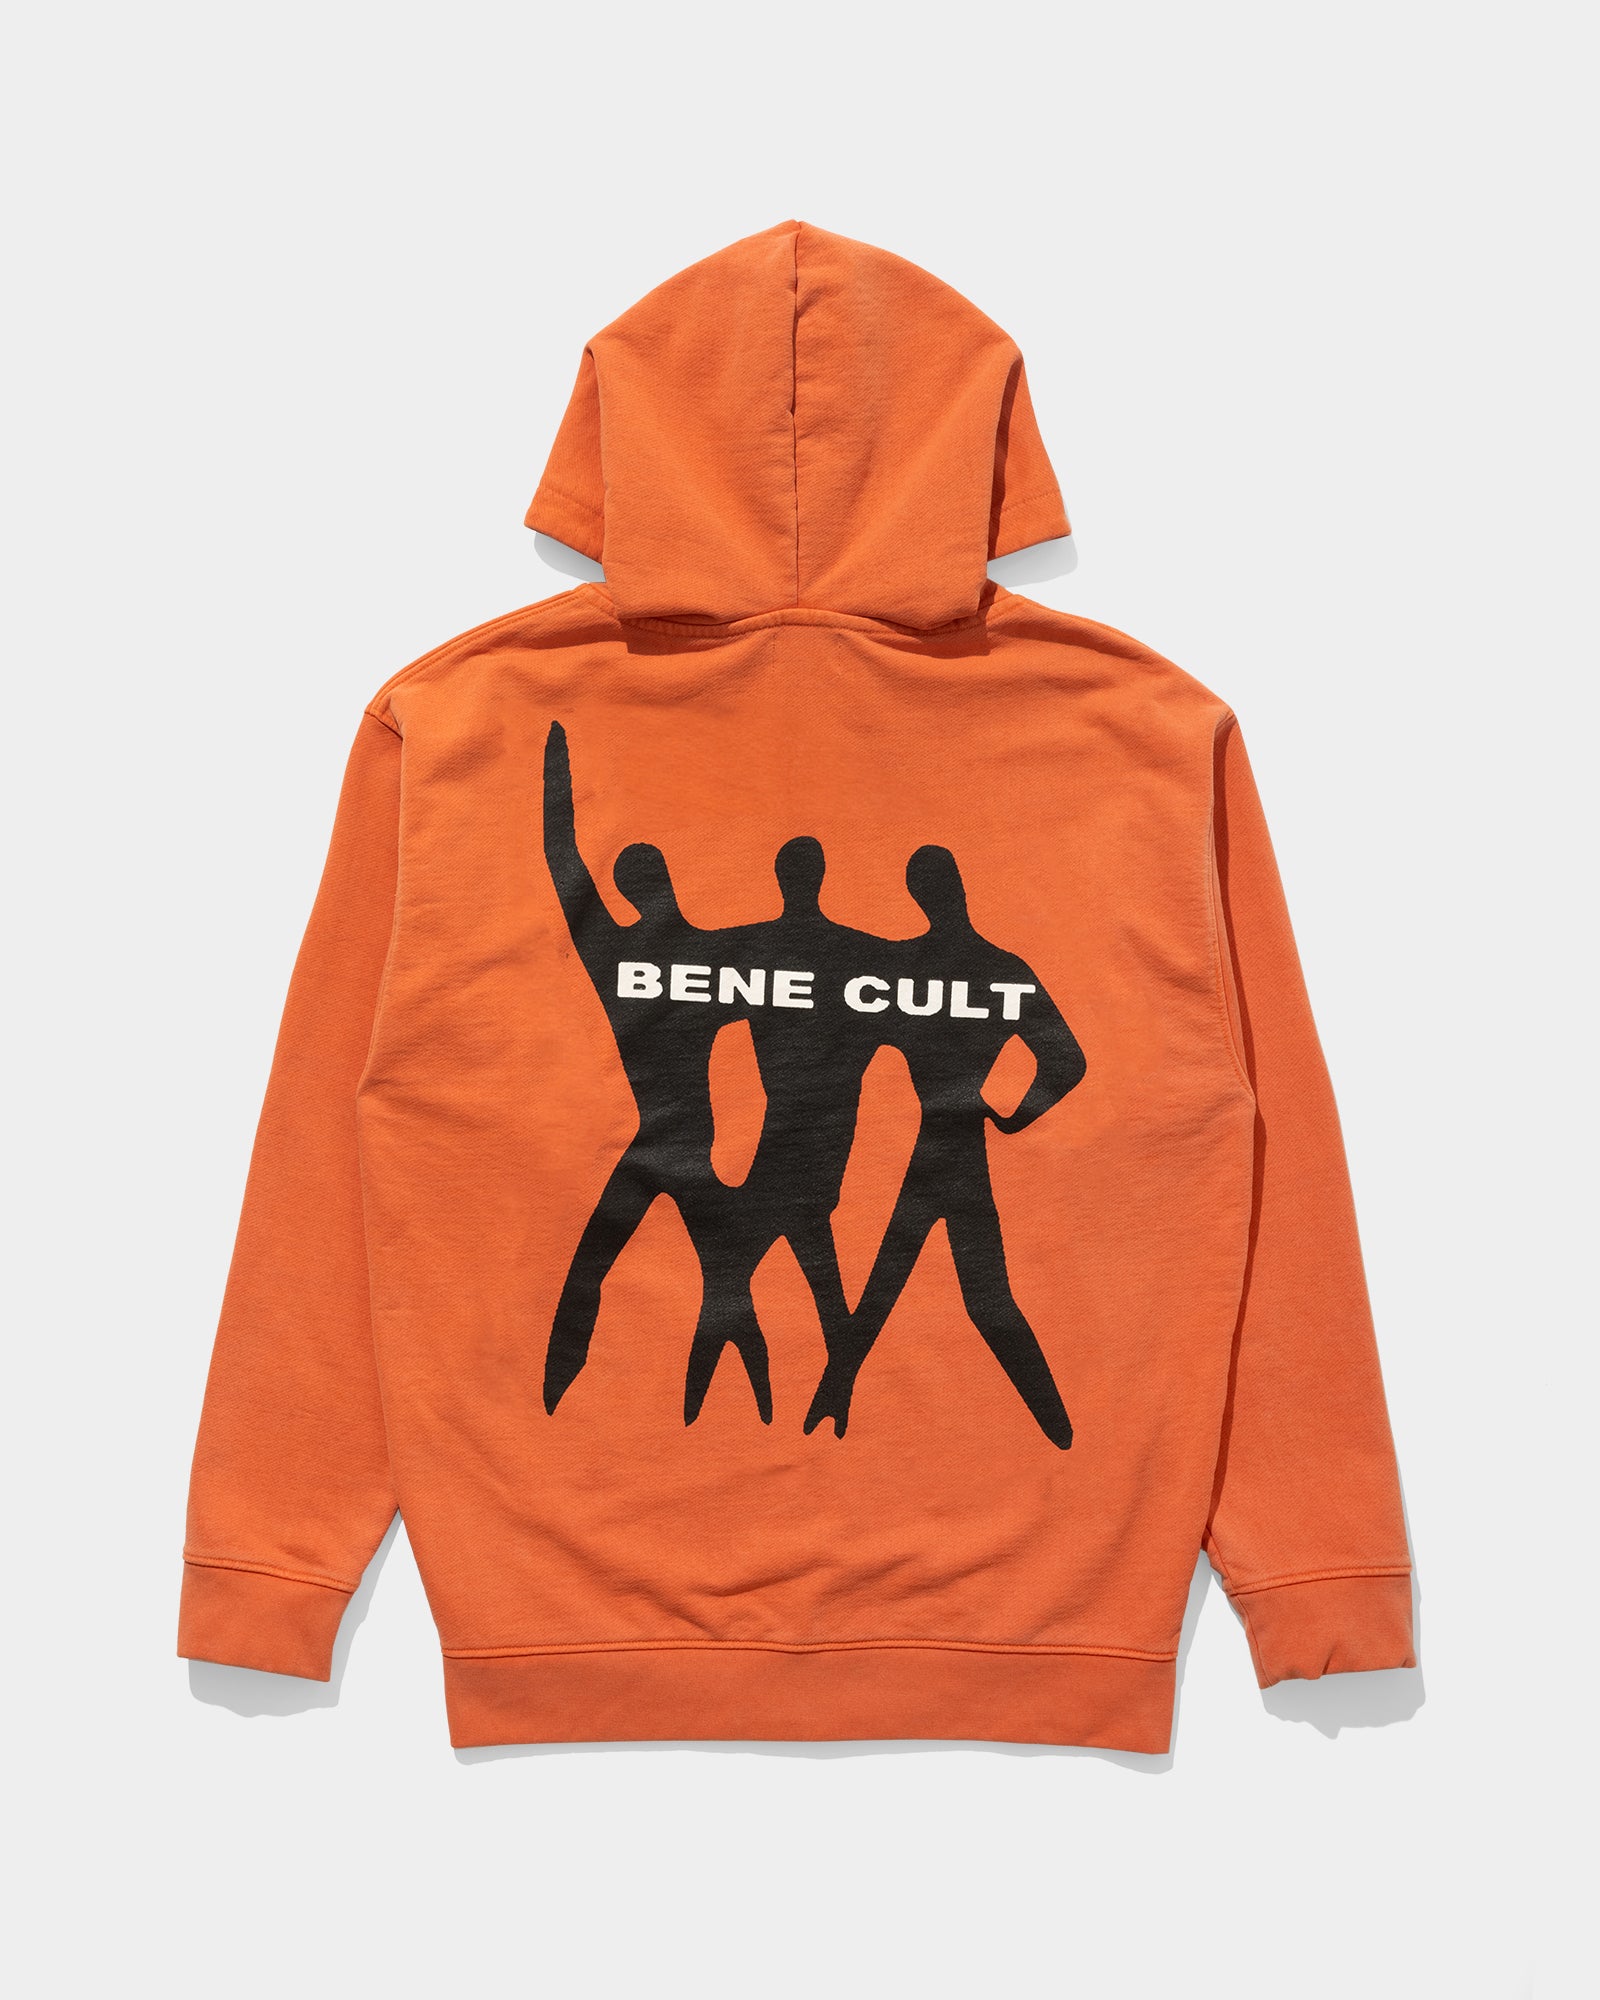 Cult Zip Hoodie (Orange)